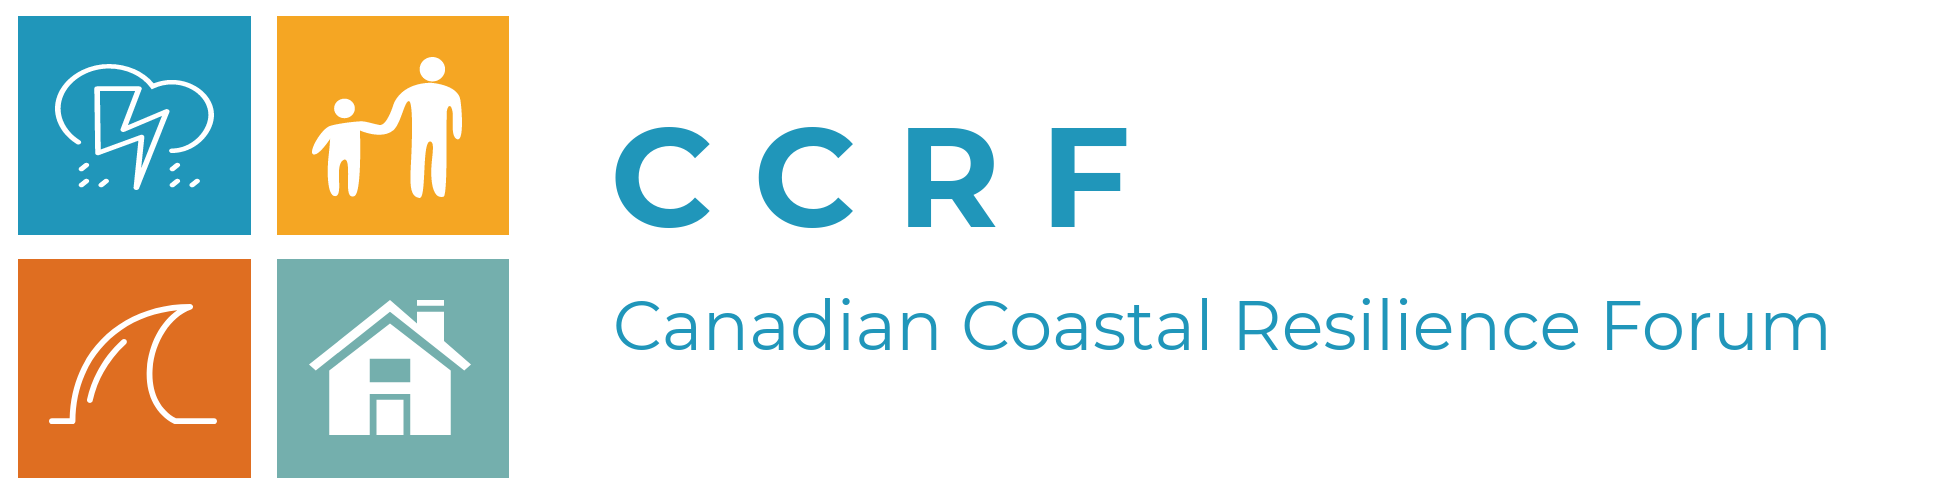 CCRF logo